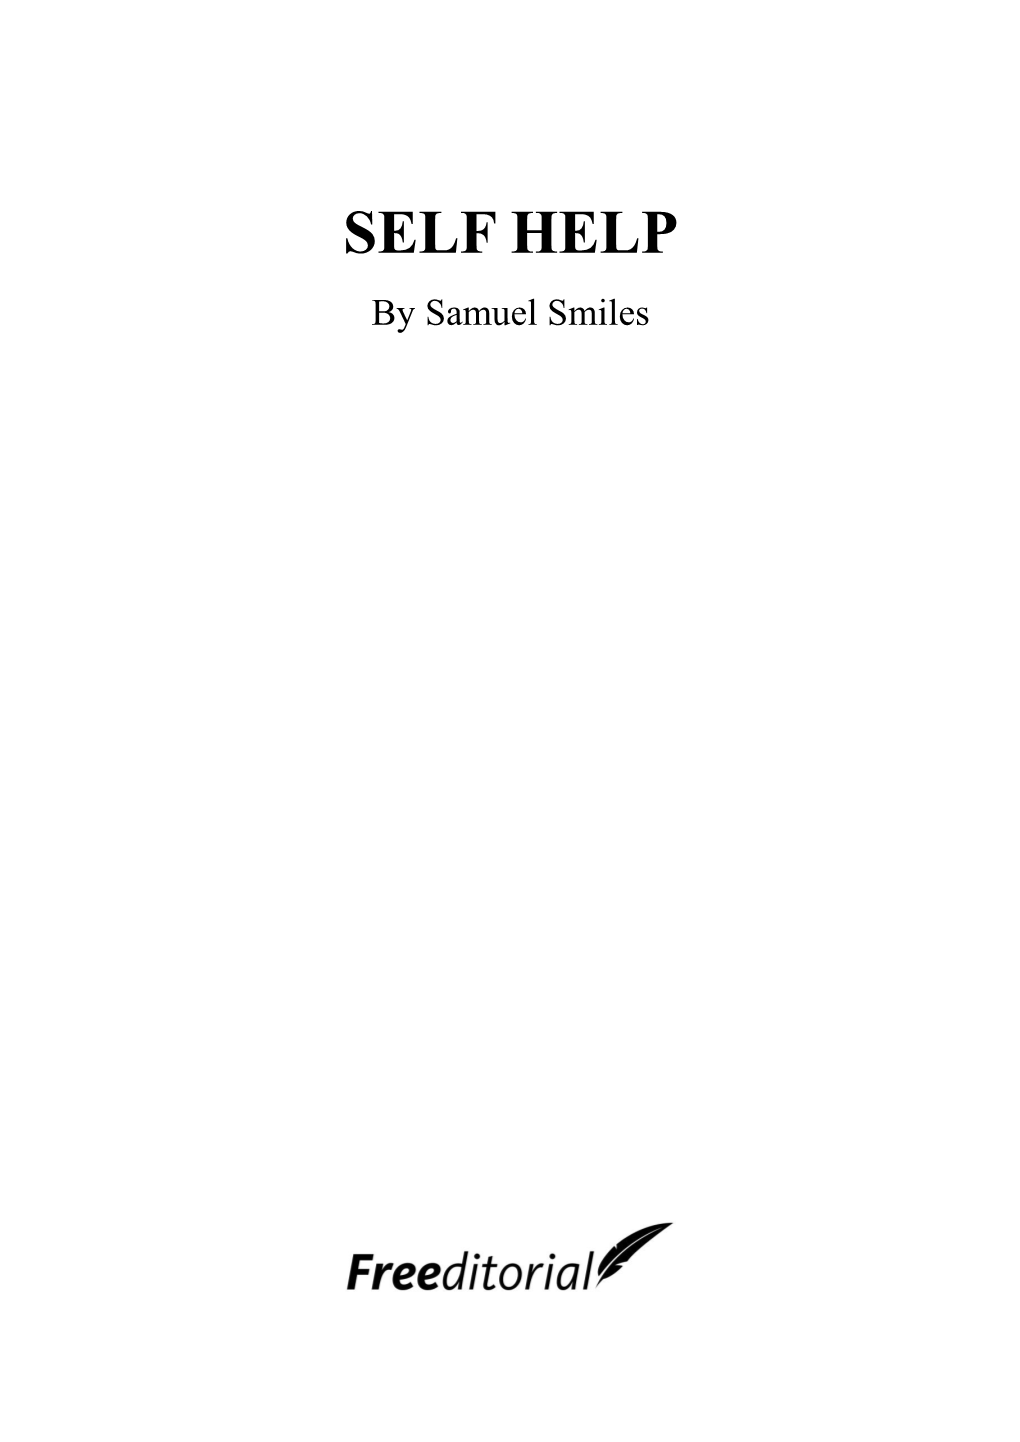 SELF HELP by Samuel Smiles